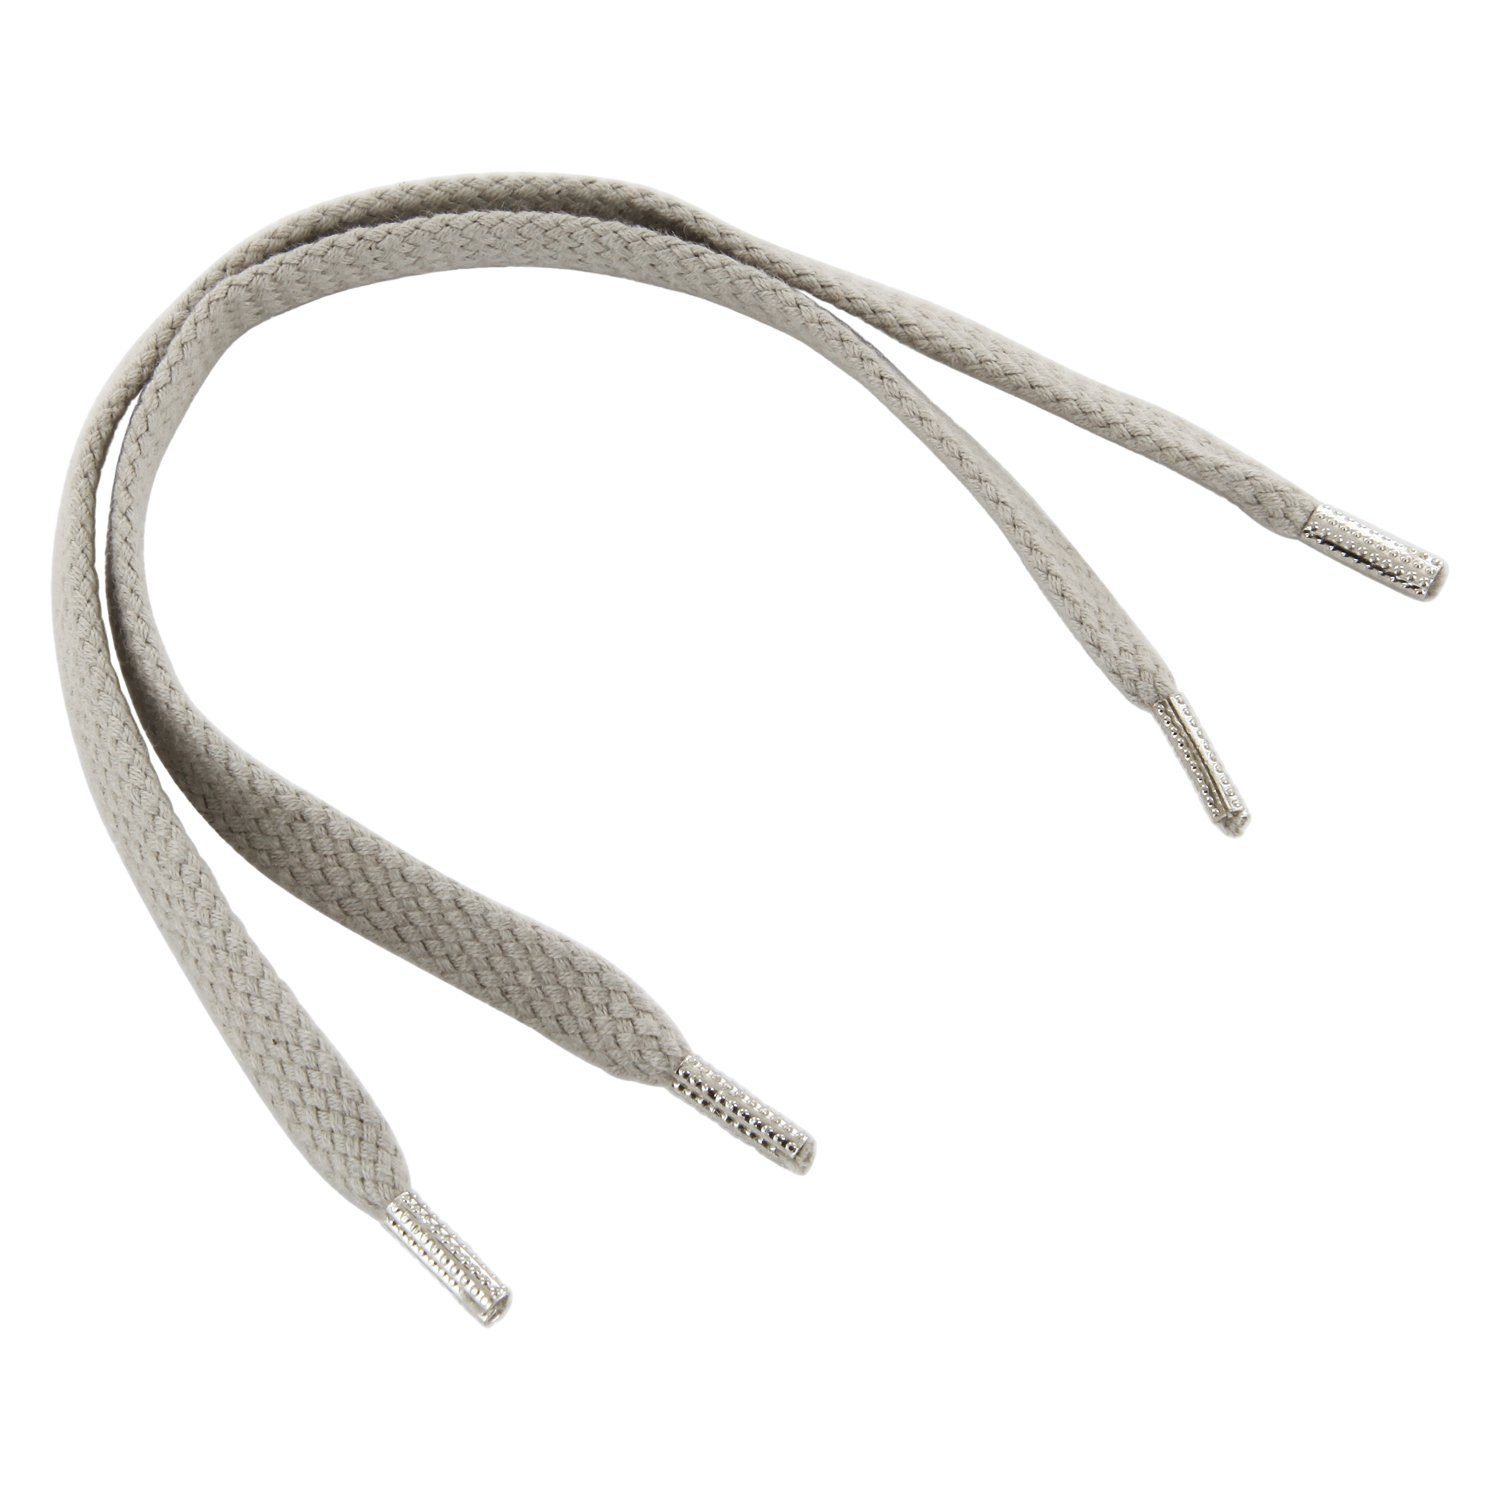 Überlegen Rema Schnürsenkel Rema mm und - Sie breit für Schnürsenkel flach versehen nach Hellgrau Metallenden mit - Wunschlänge 6-7 ca. geschnitten